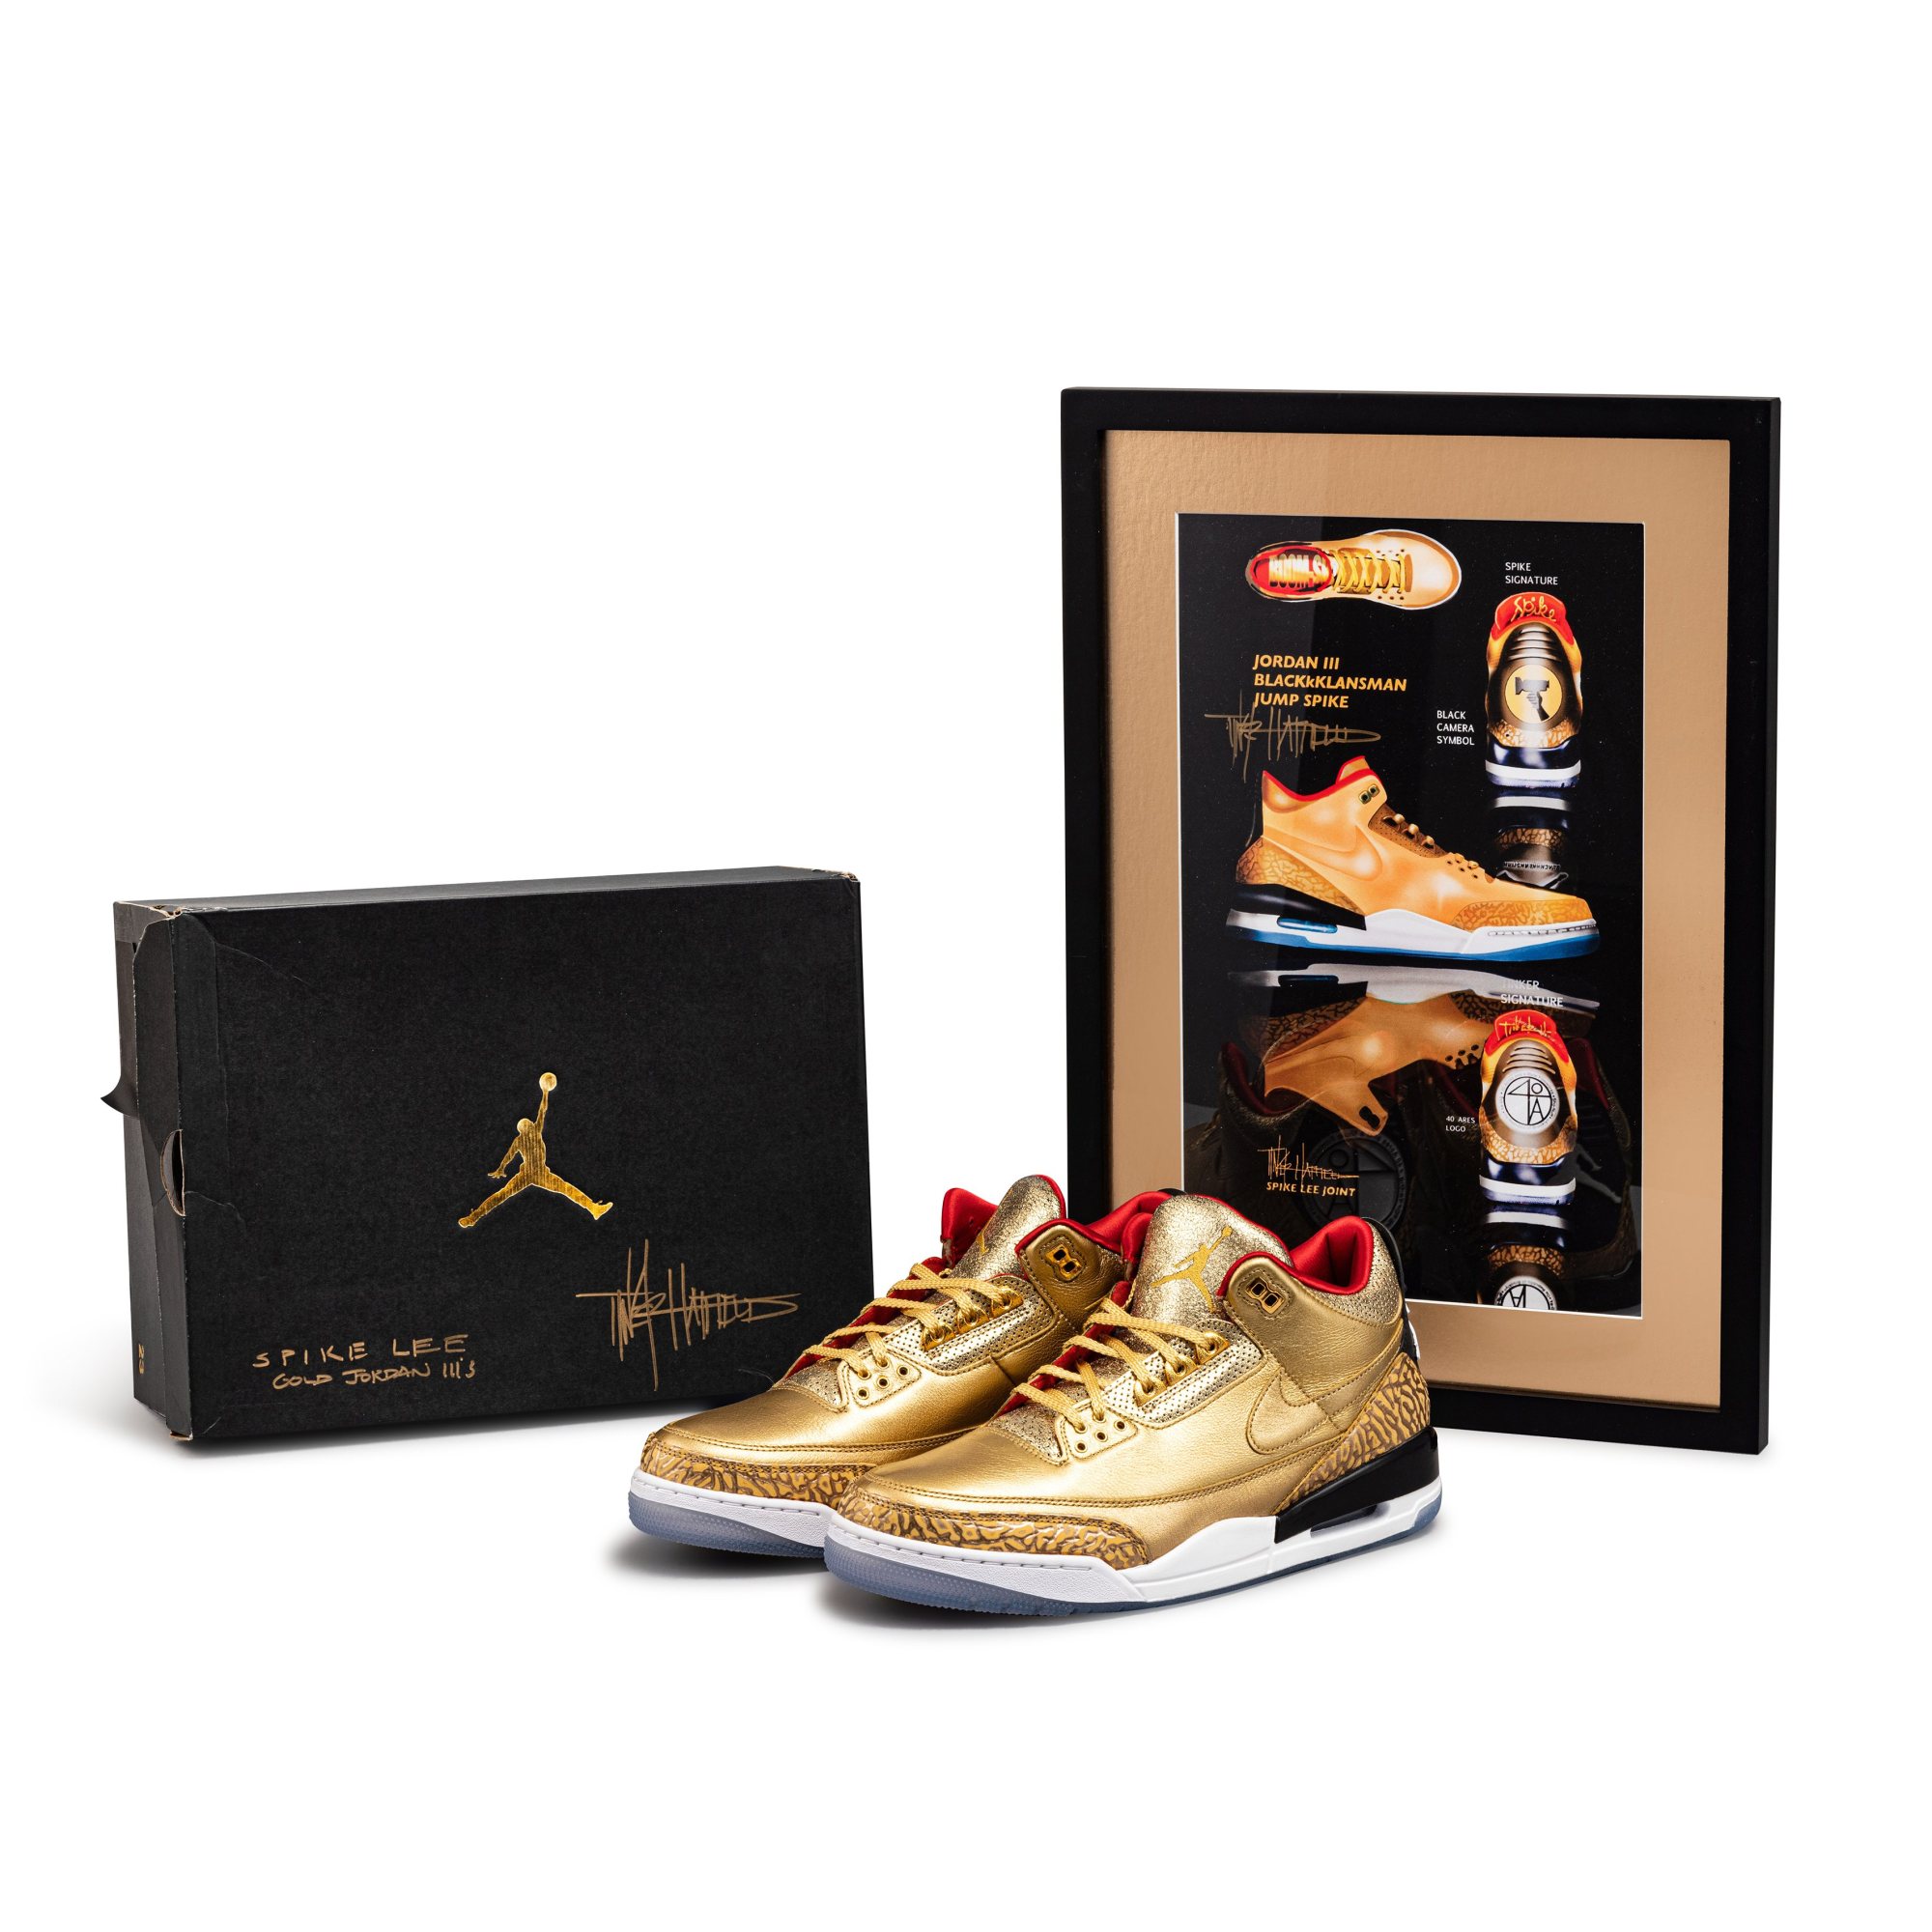 Gold Nike Air Jordan 3s and design paraphernalia.